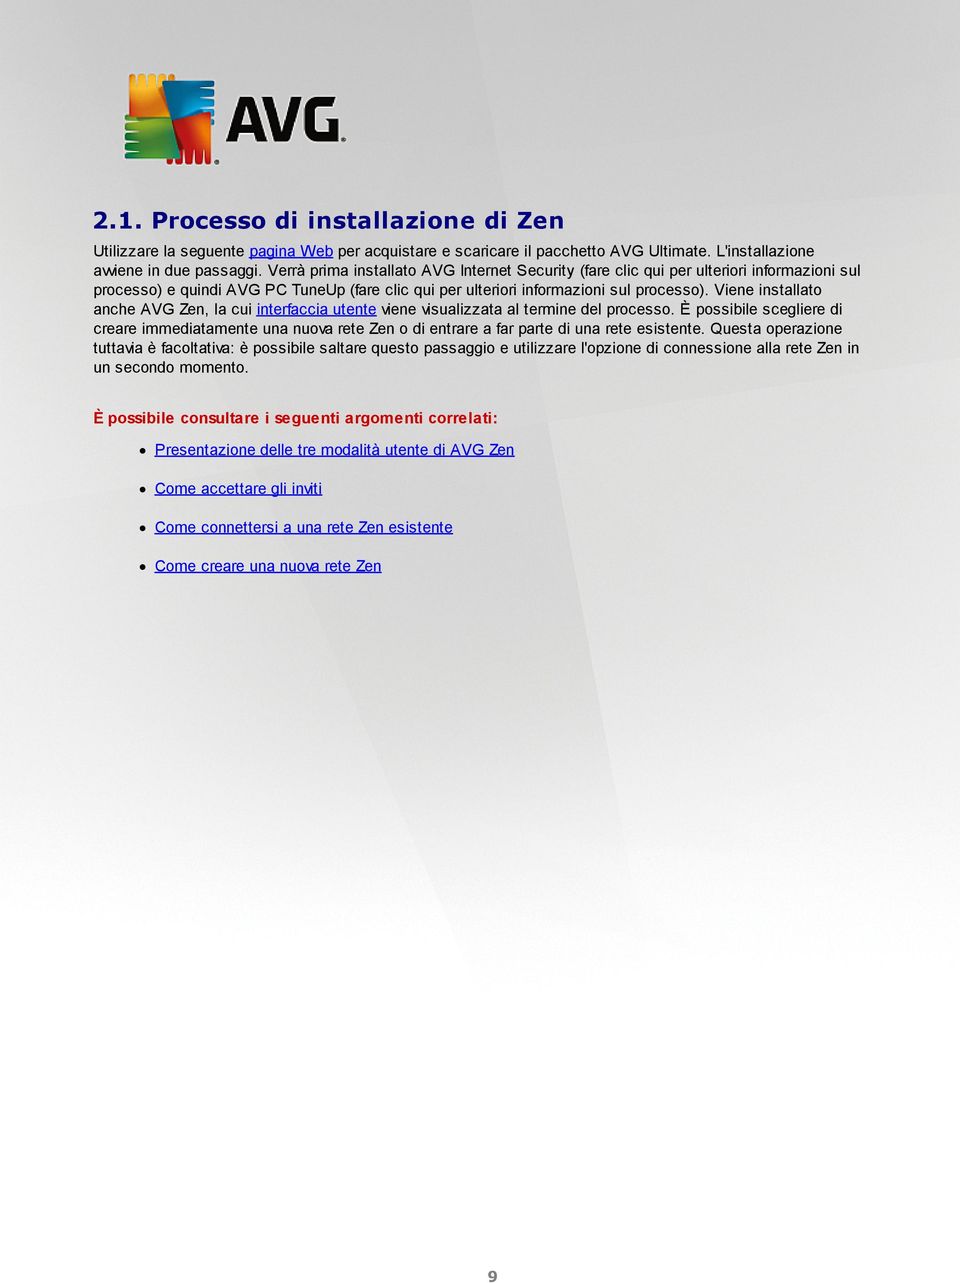 Viene installato anche AVG Zen, la cui interfaccia utente viene visualizzata al termine del processo.